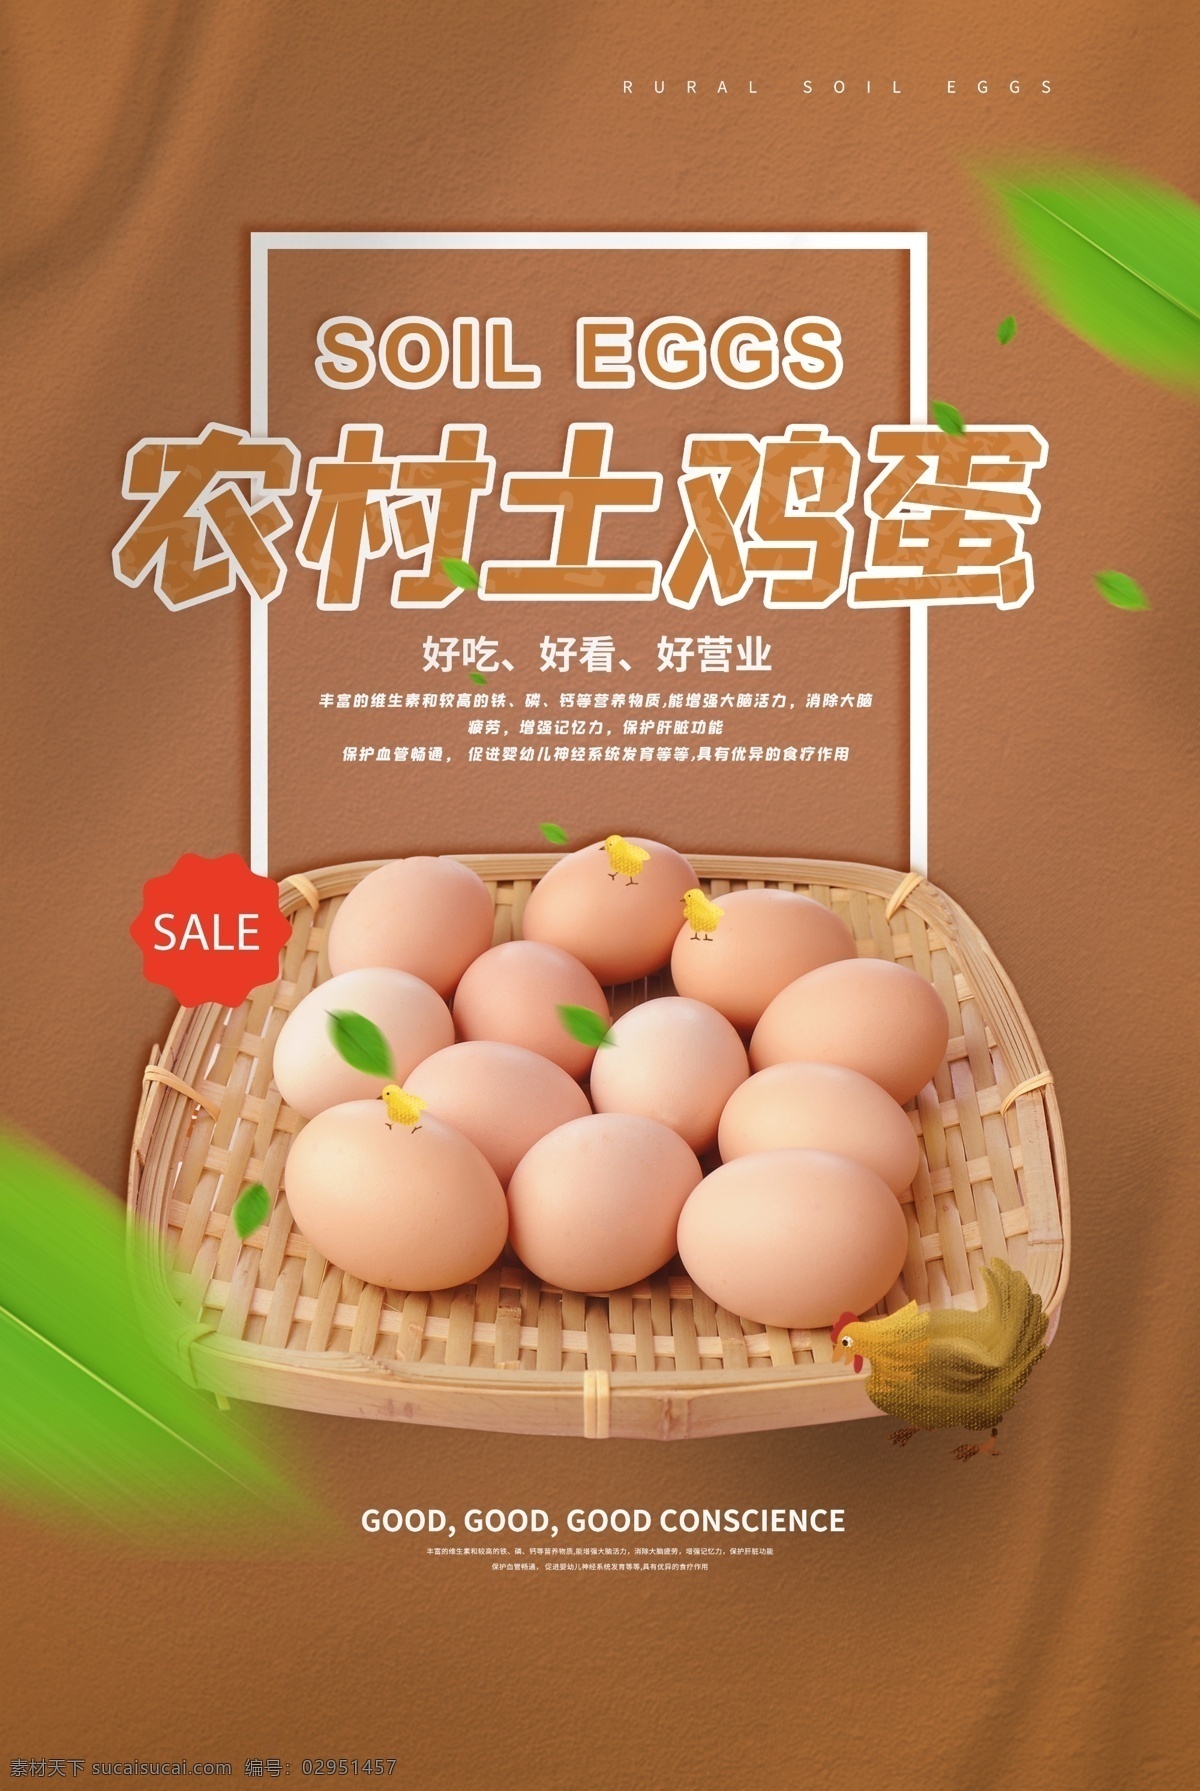 农村 土 鸡蛋 促销 宣传 活动 海报 土鸡蛋